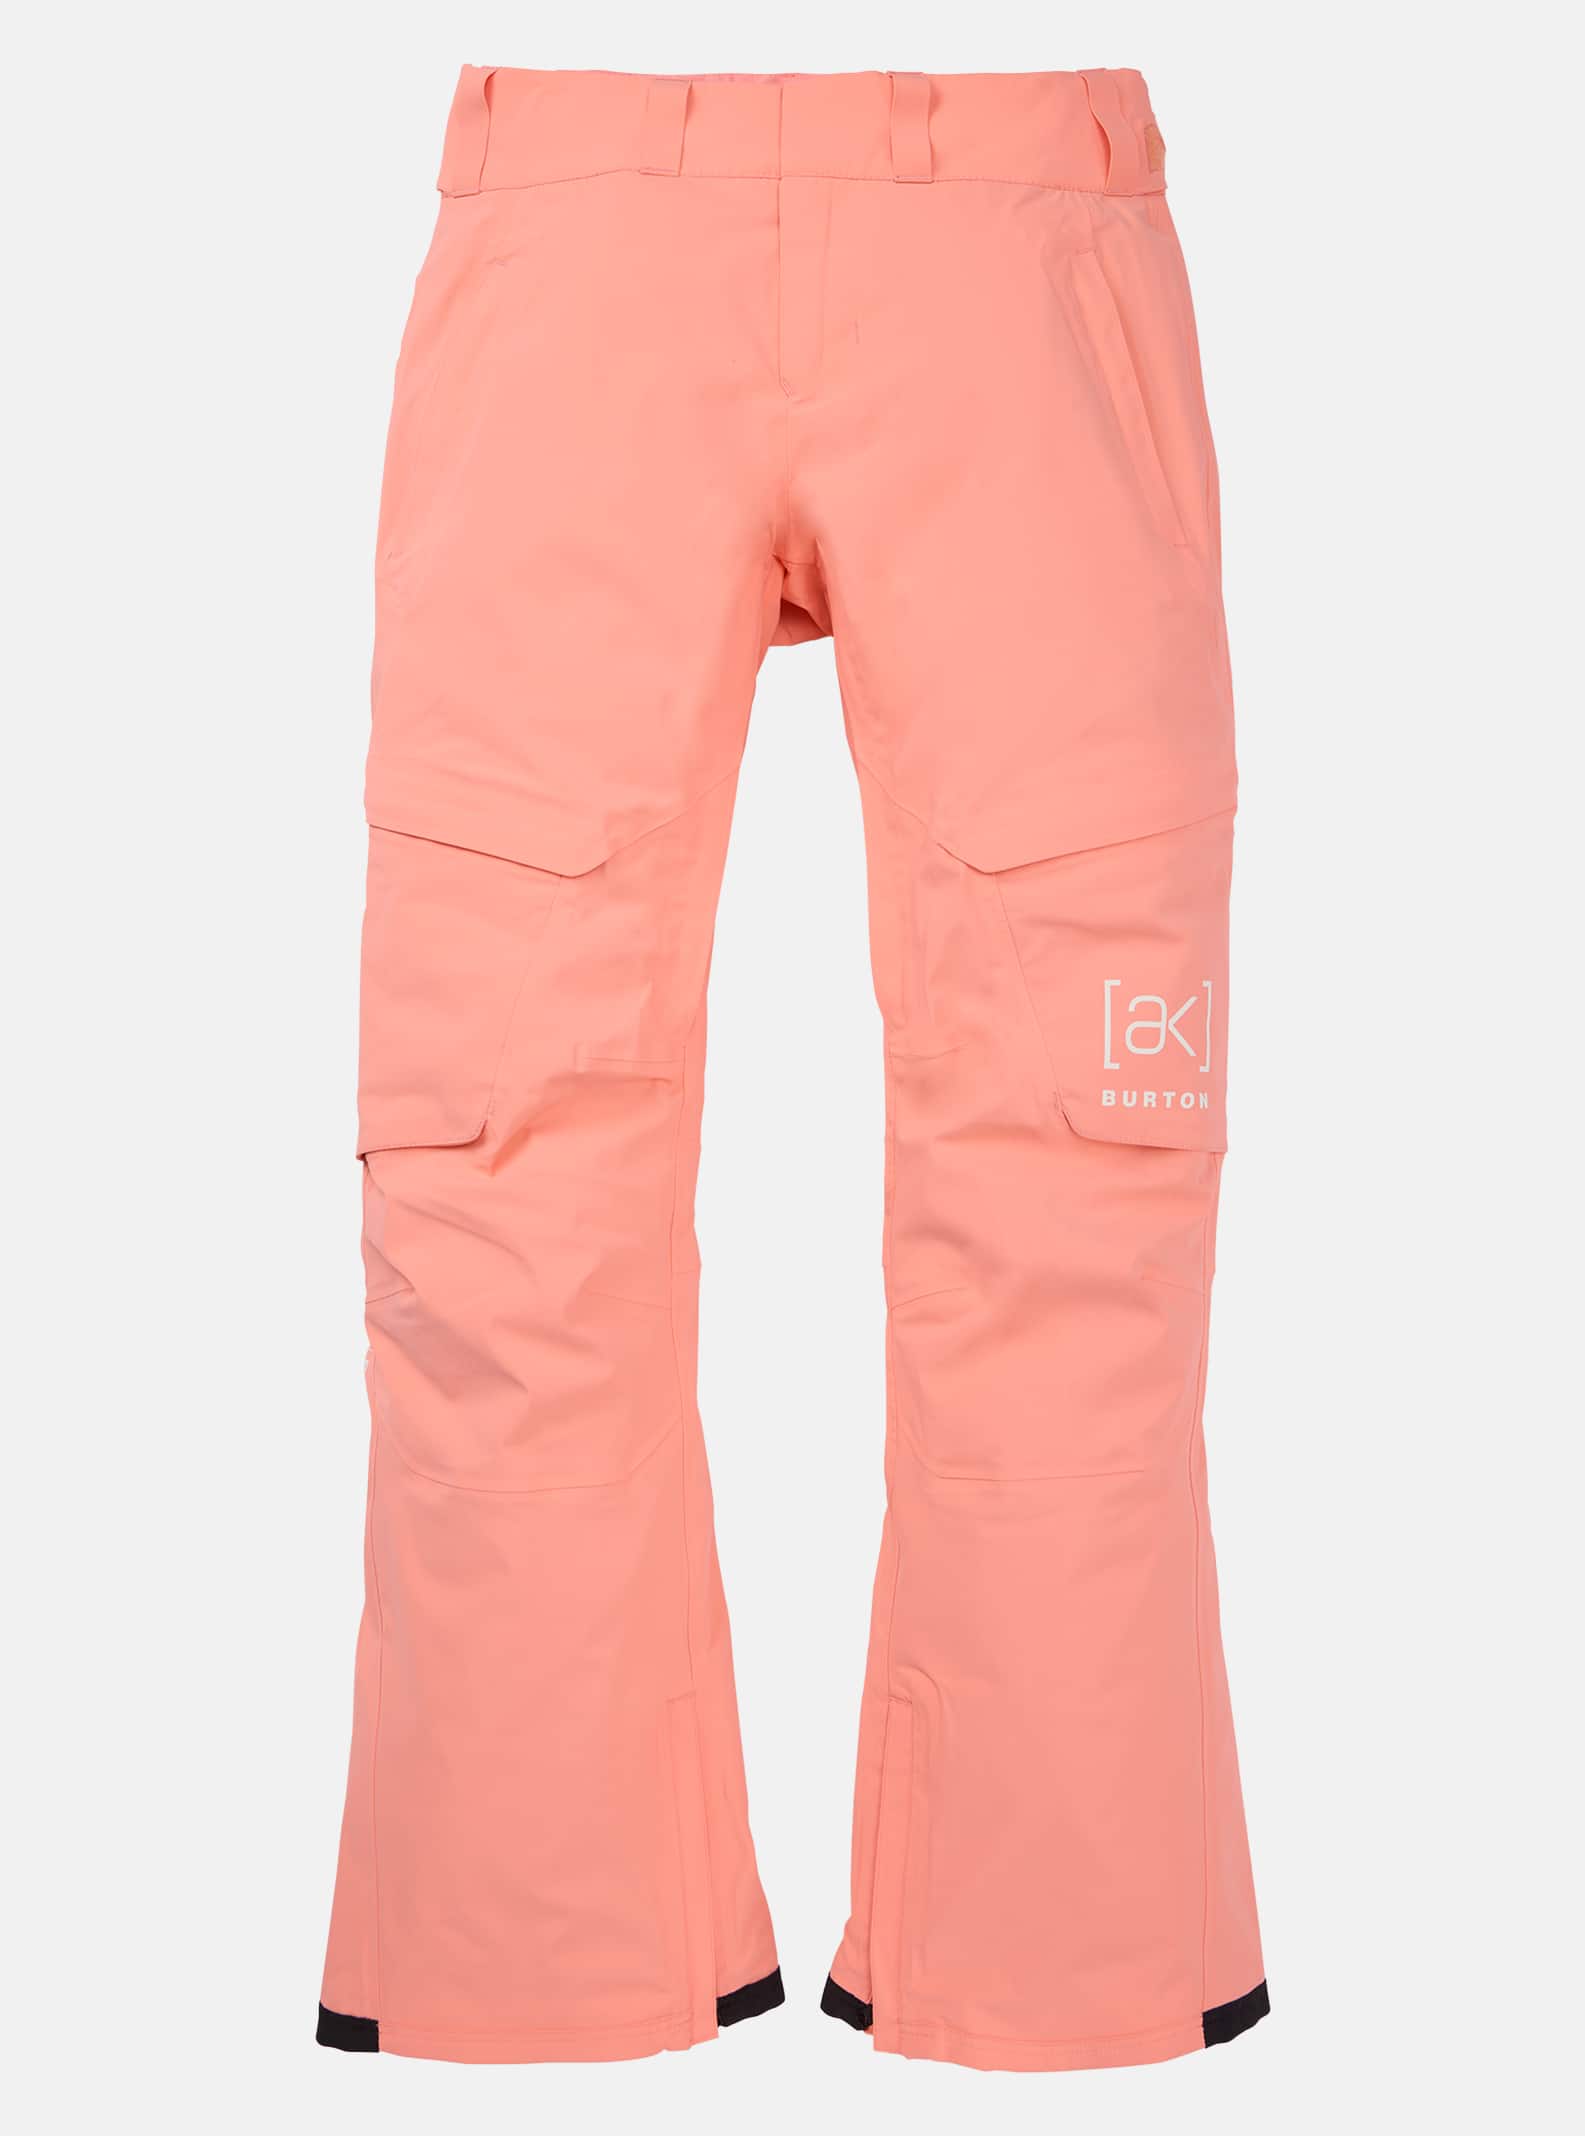 Burton Women's [ak] Summit GORE?TEX 2L Insulated Pants, Reef Pink, L